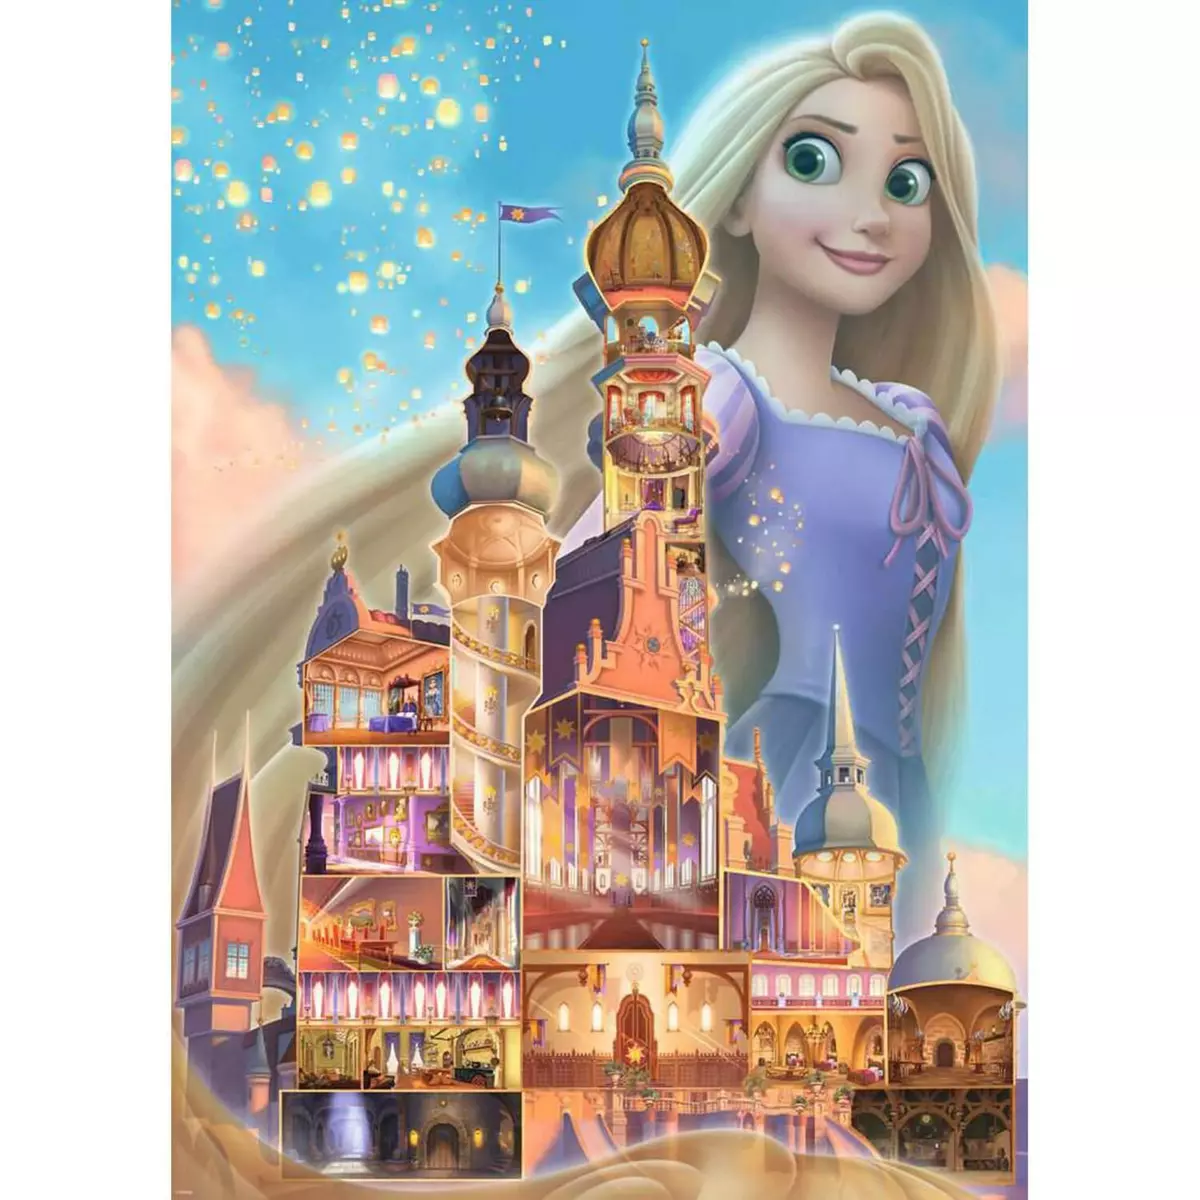 RAVENSBURGER Puzzle 1000 pièces : Raiponce (Collection Château des Princesses Disney)